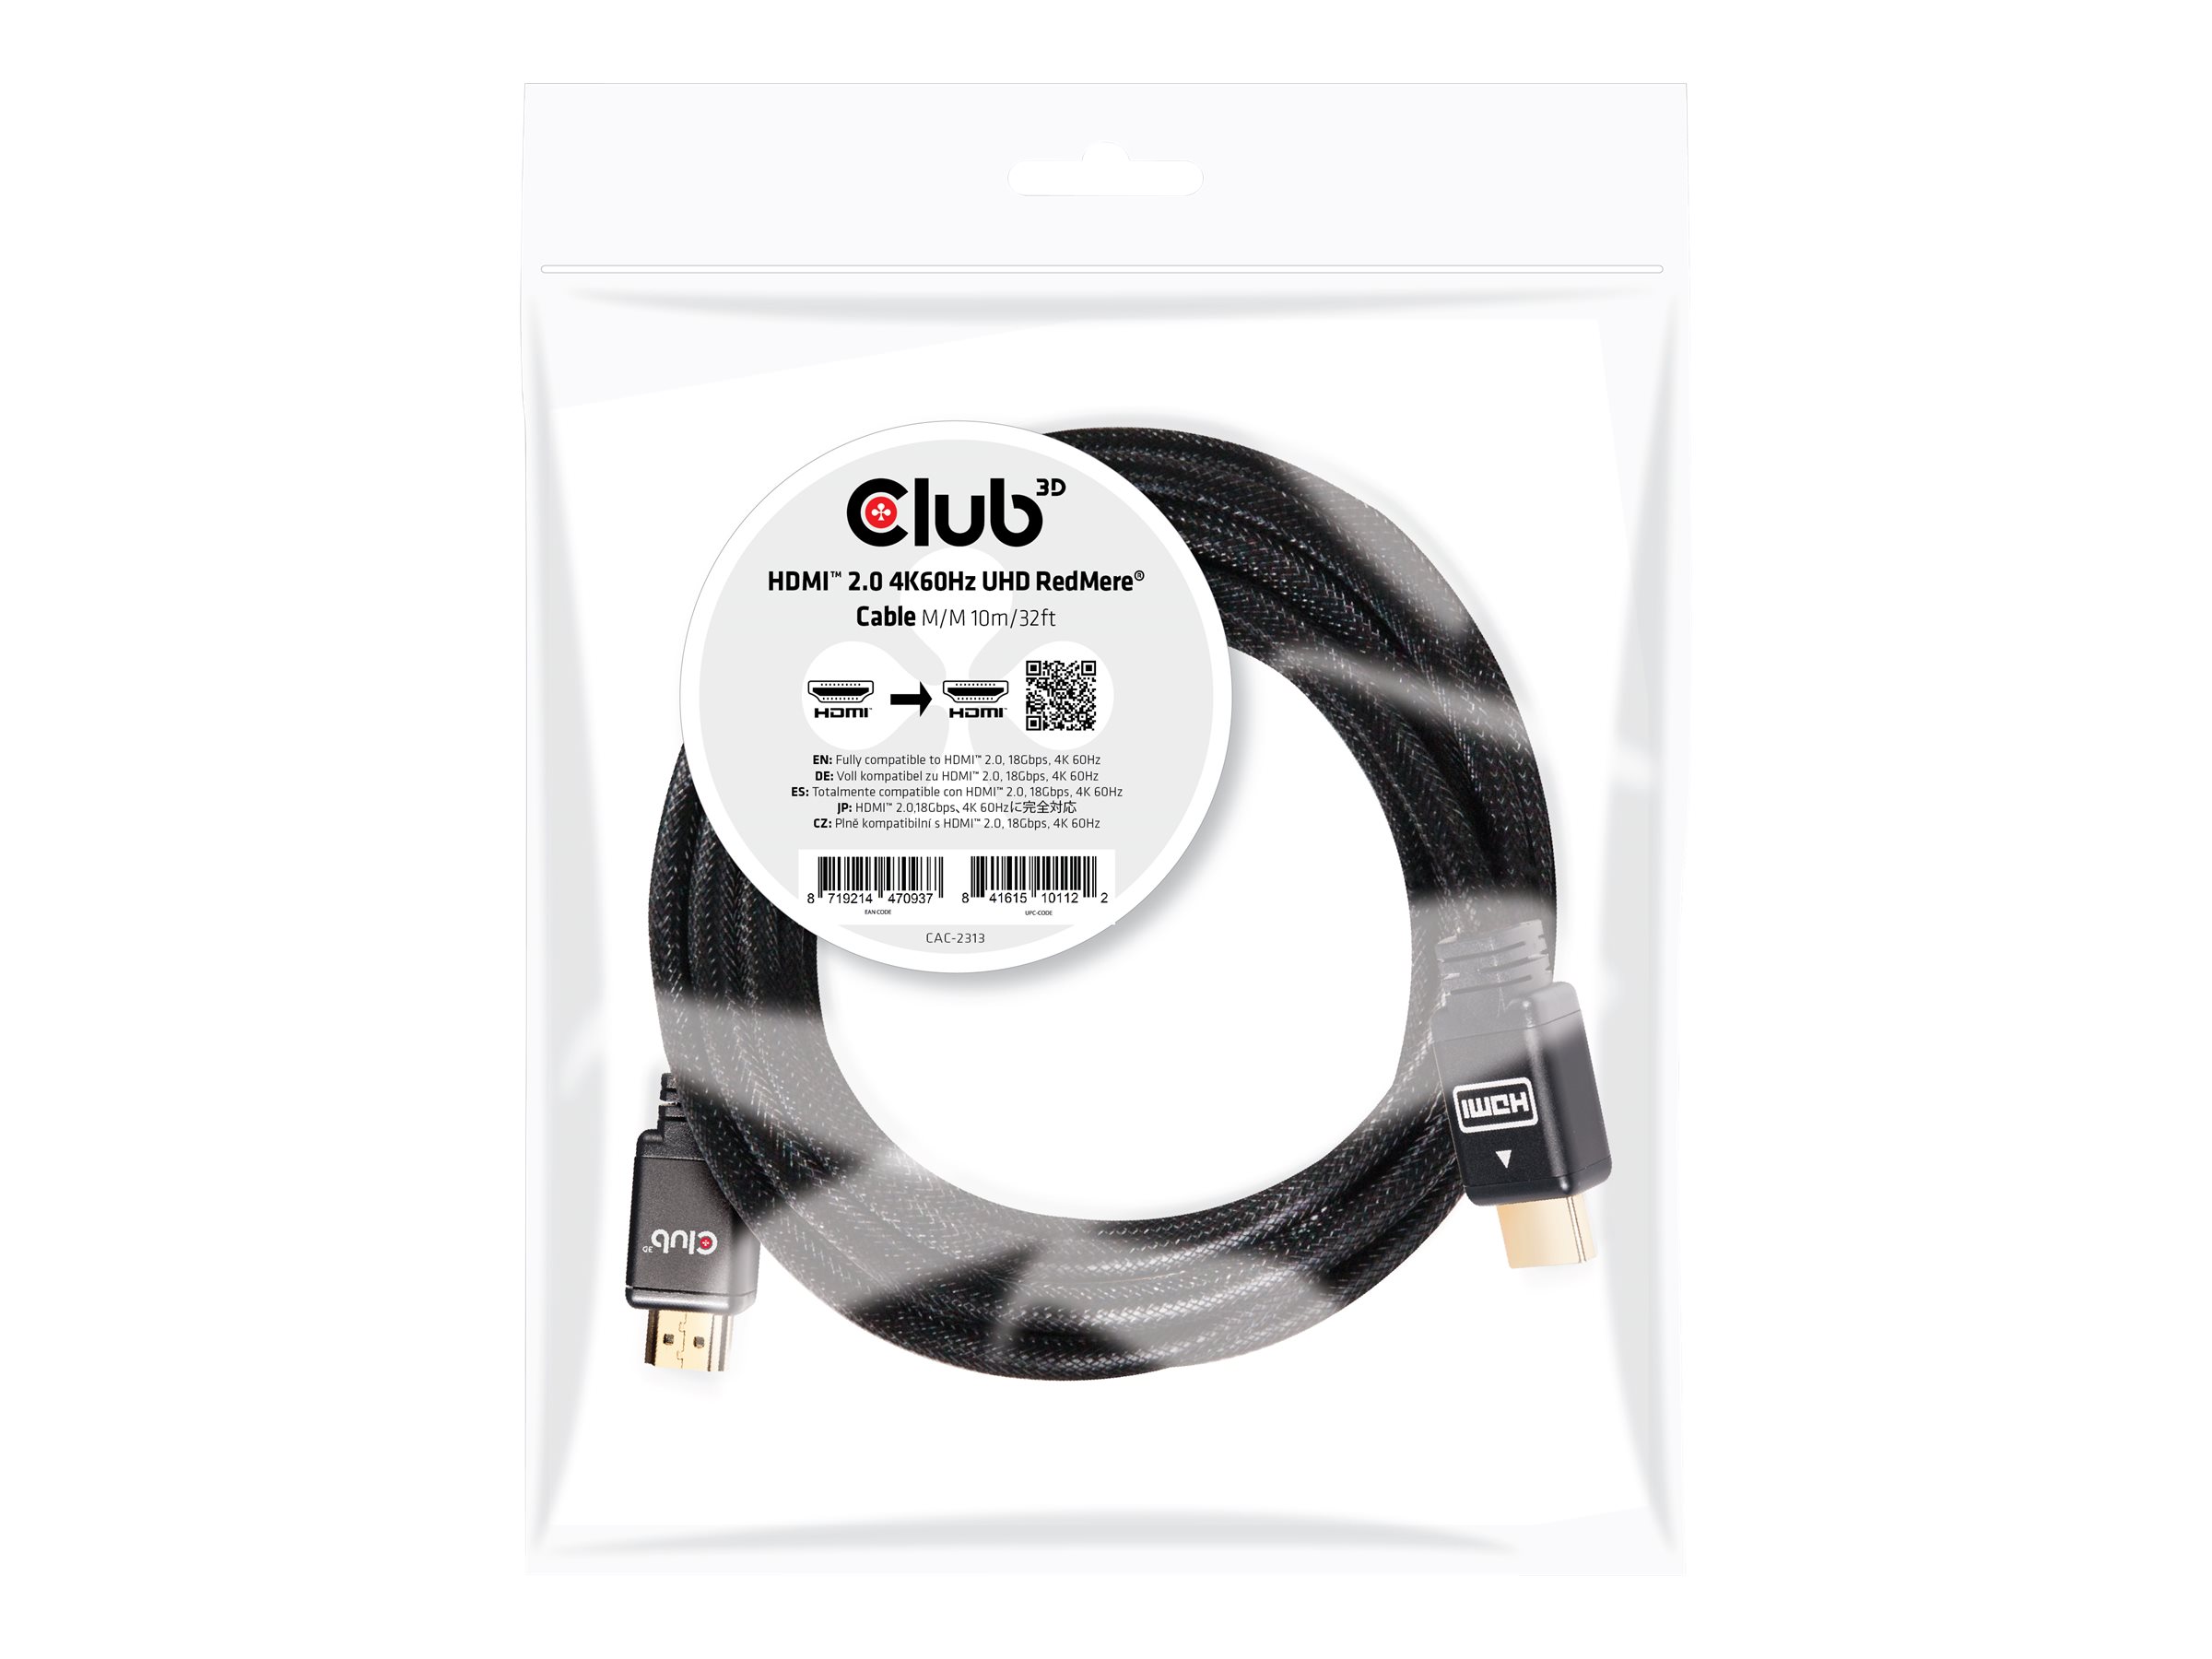 Club 3D CAC-2313 - HDMI-Kabel mit Ethernet - HDMI mnnlich zu HDMI mnnlich - 10 m - RedMere Technology - 4K Untersttzung, akti